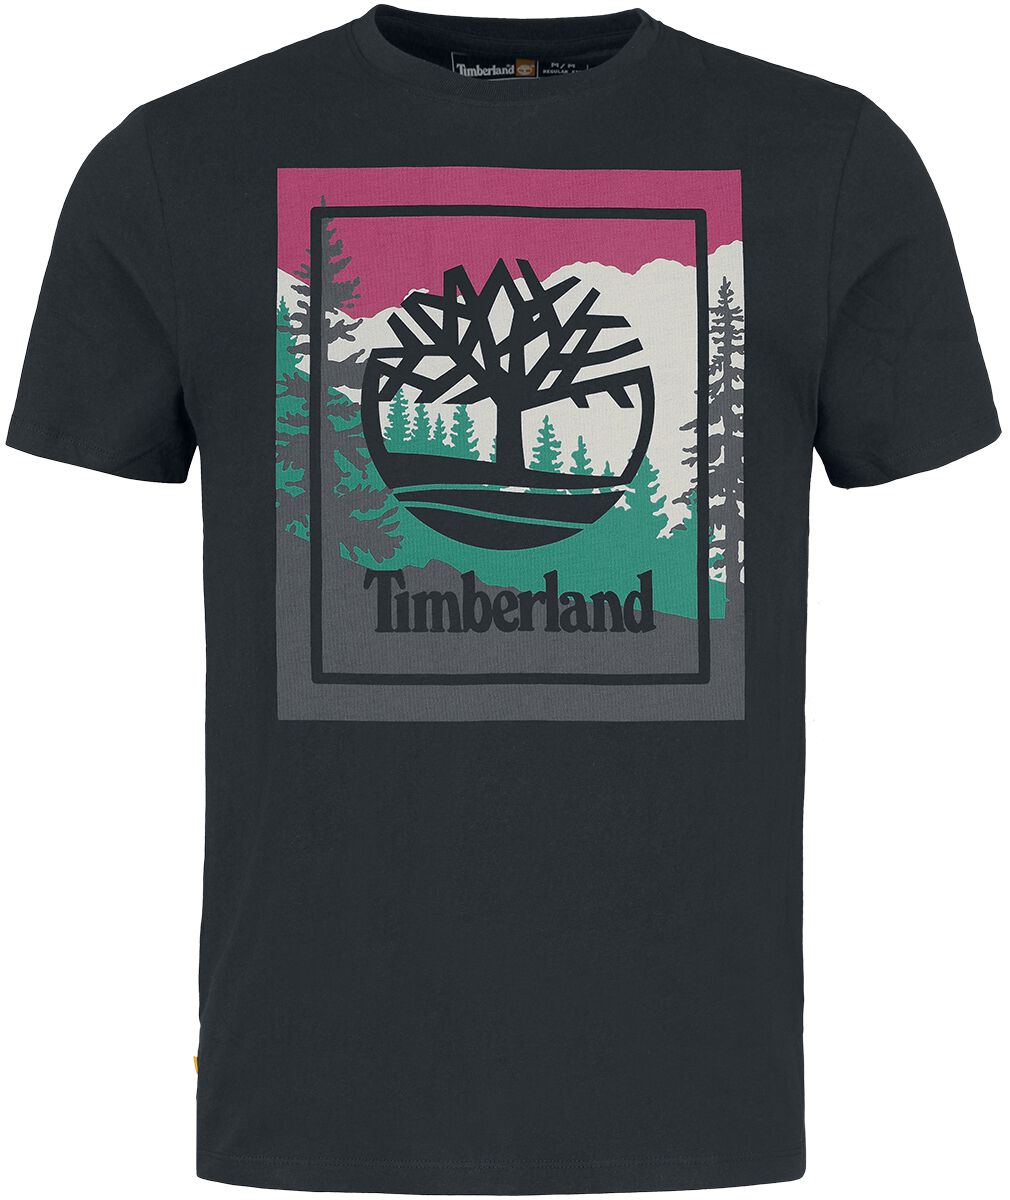 Timberland T-Shirt - Outdoor Inspired Graphic Tee - S bis L - für Männer - Größe M - schwarz